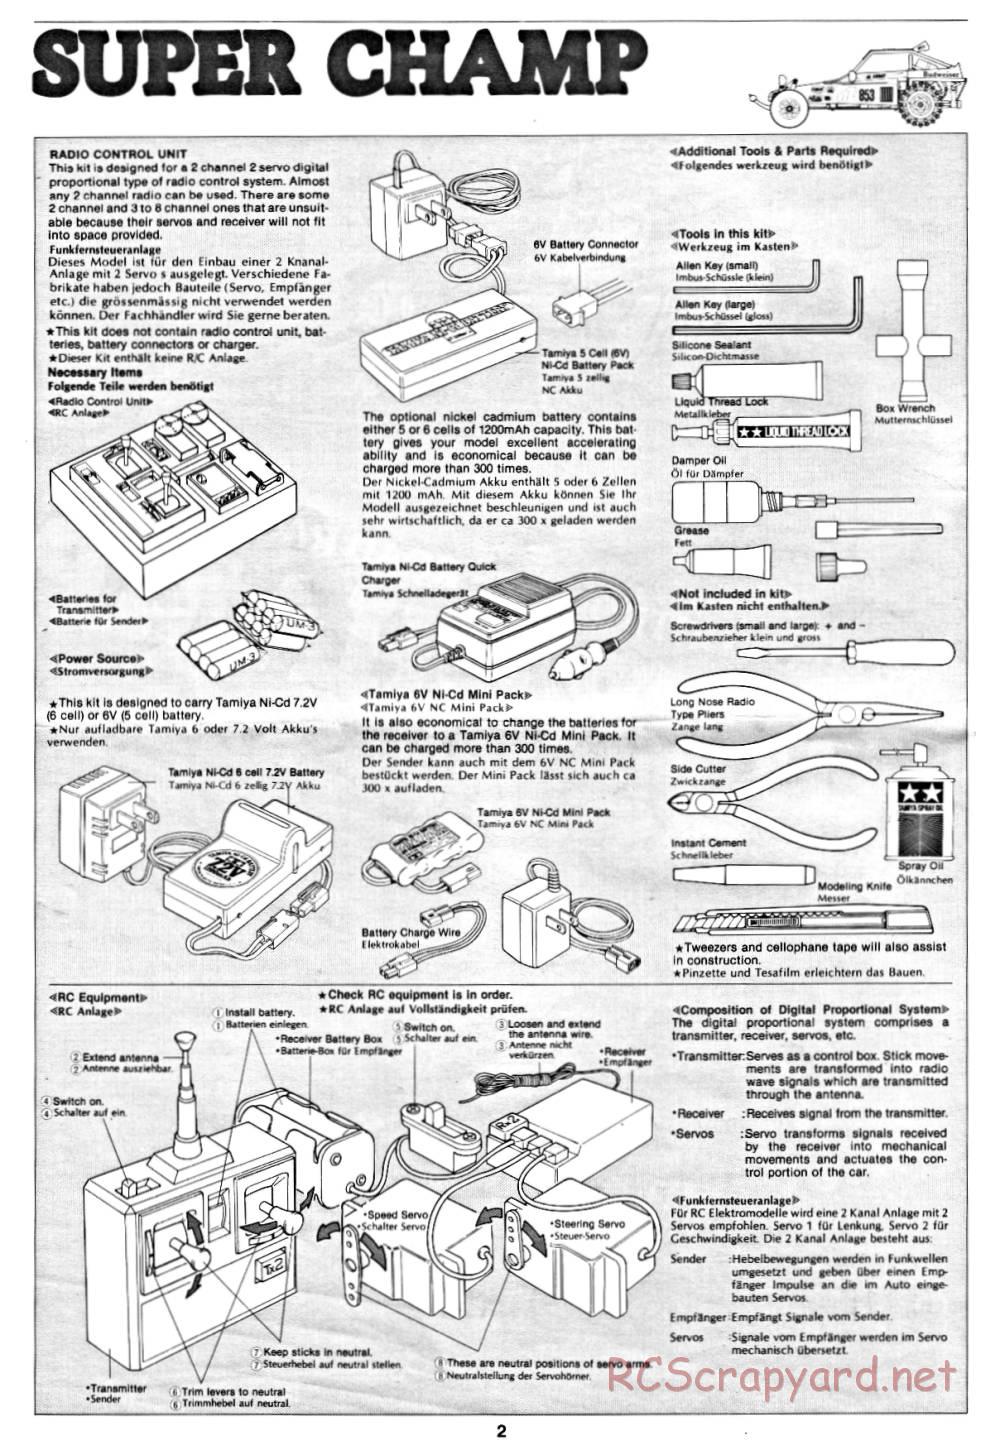 Tamiya - Super Champ - 58034 - Manual - Page 2